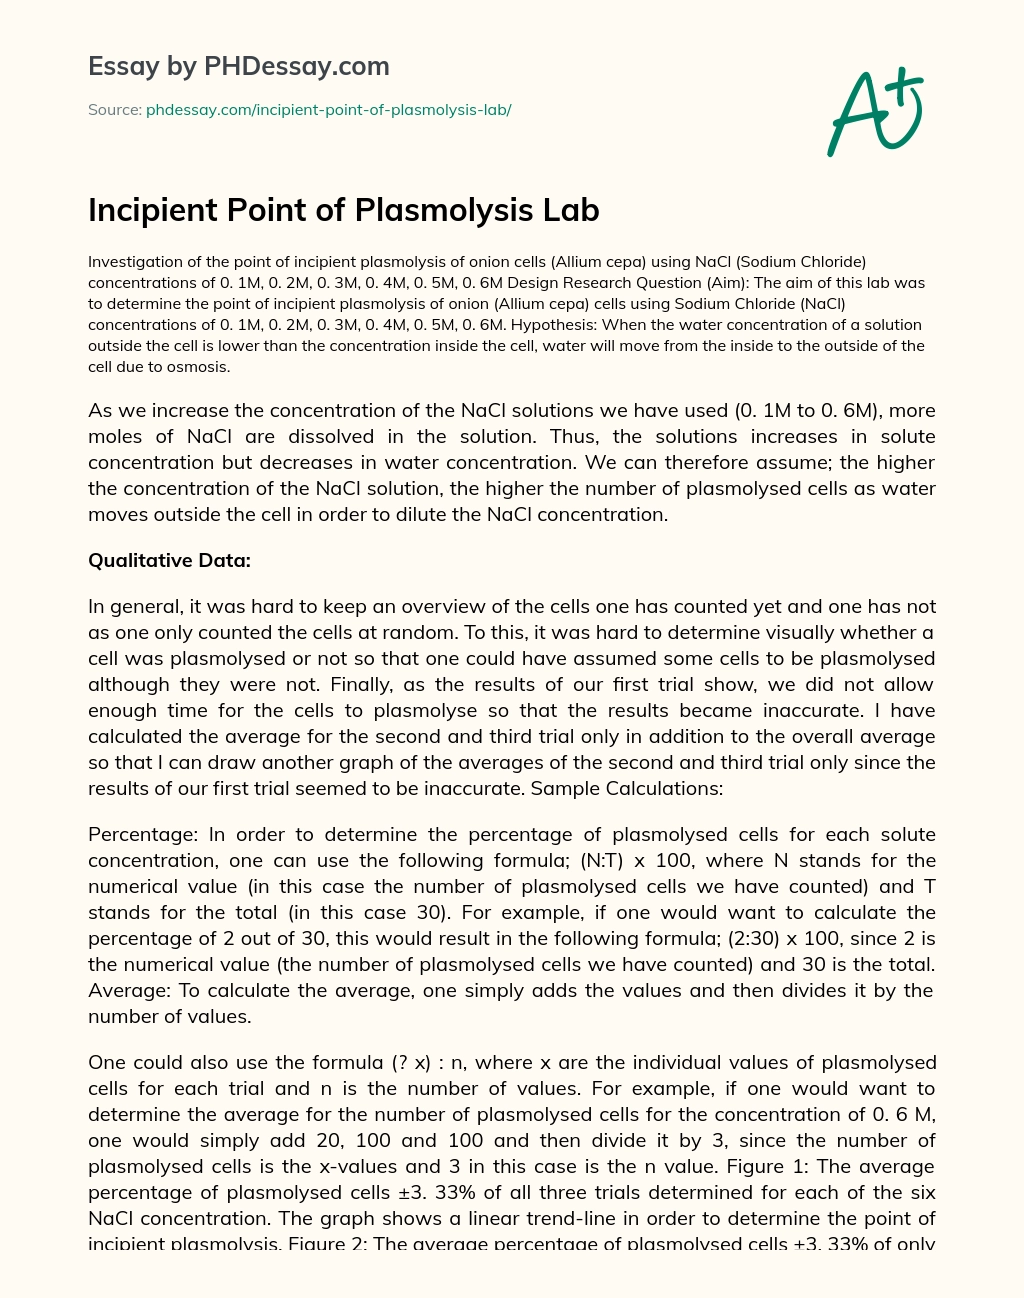 Incipient Point of Plasmolysis Lab essay